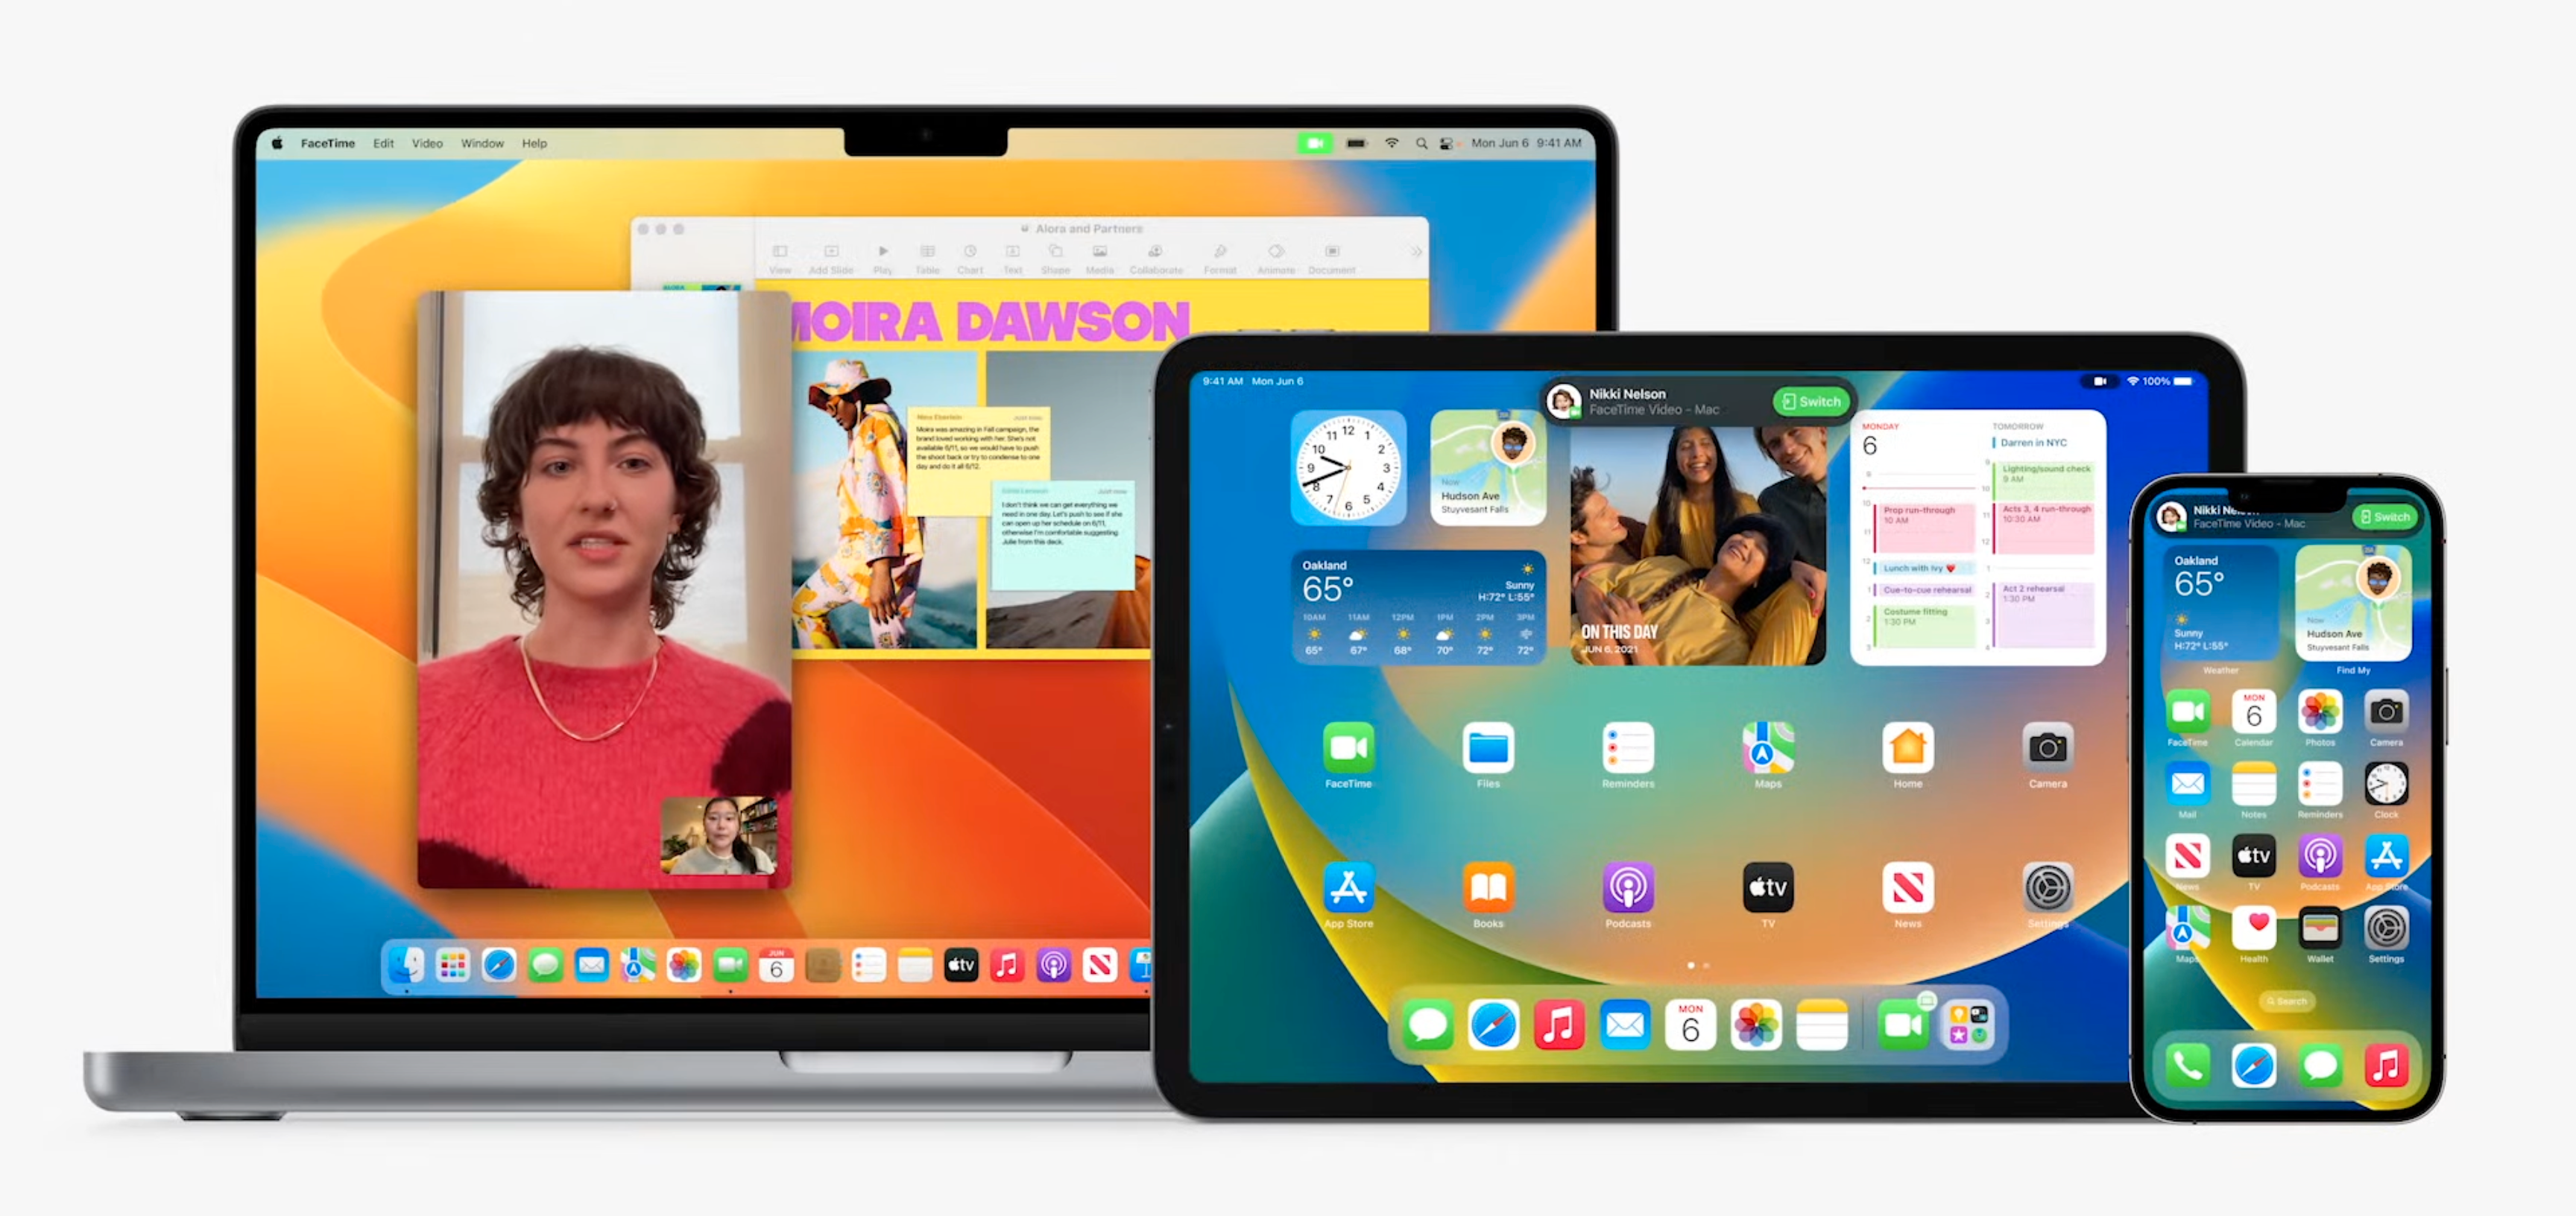 Har Apple knekket koden? Det virker i hvert fall slik, for nå blir alle selskapets skjermstørrelser betraktelig likere hverandre i praksis.